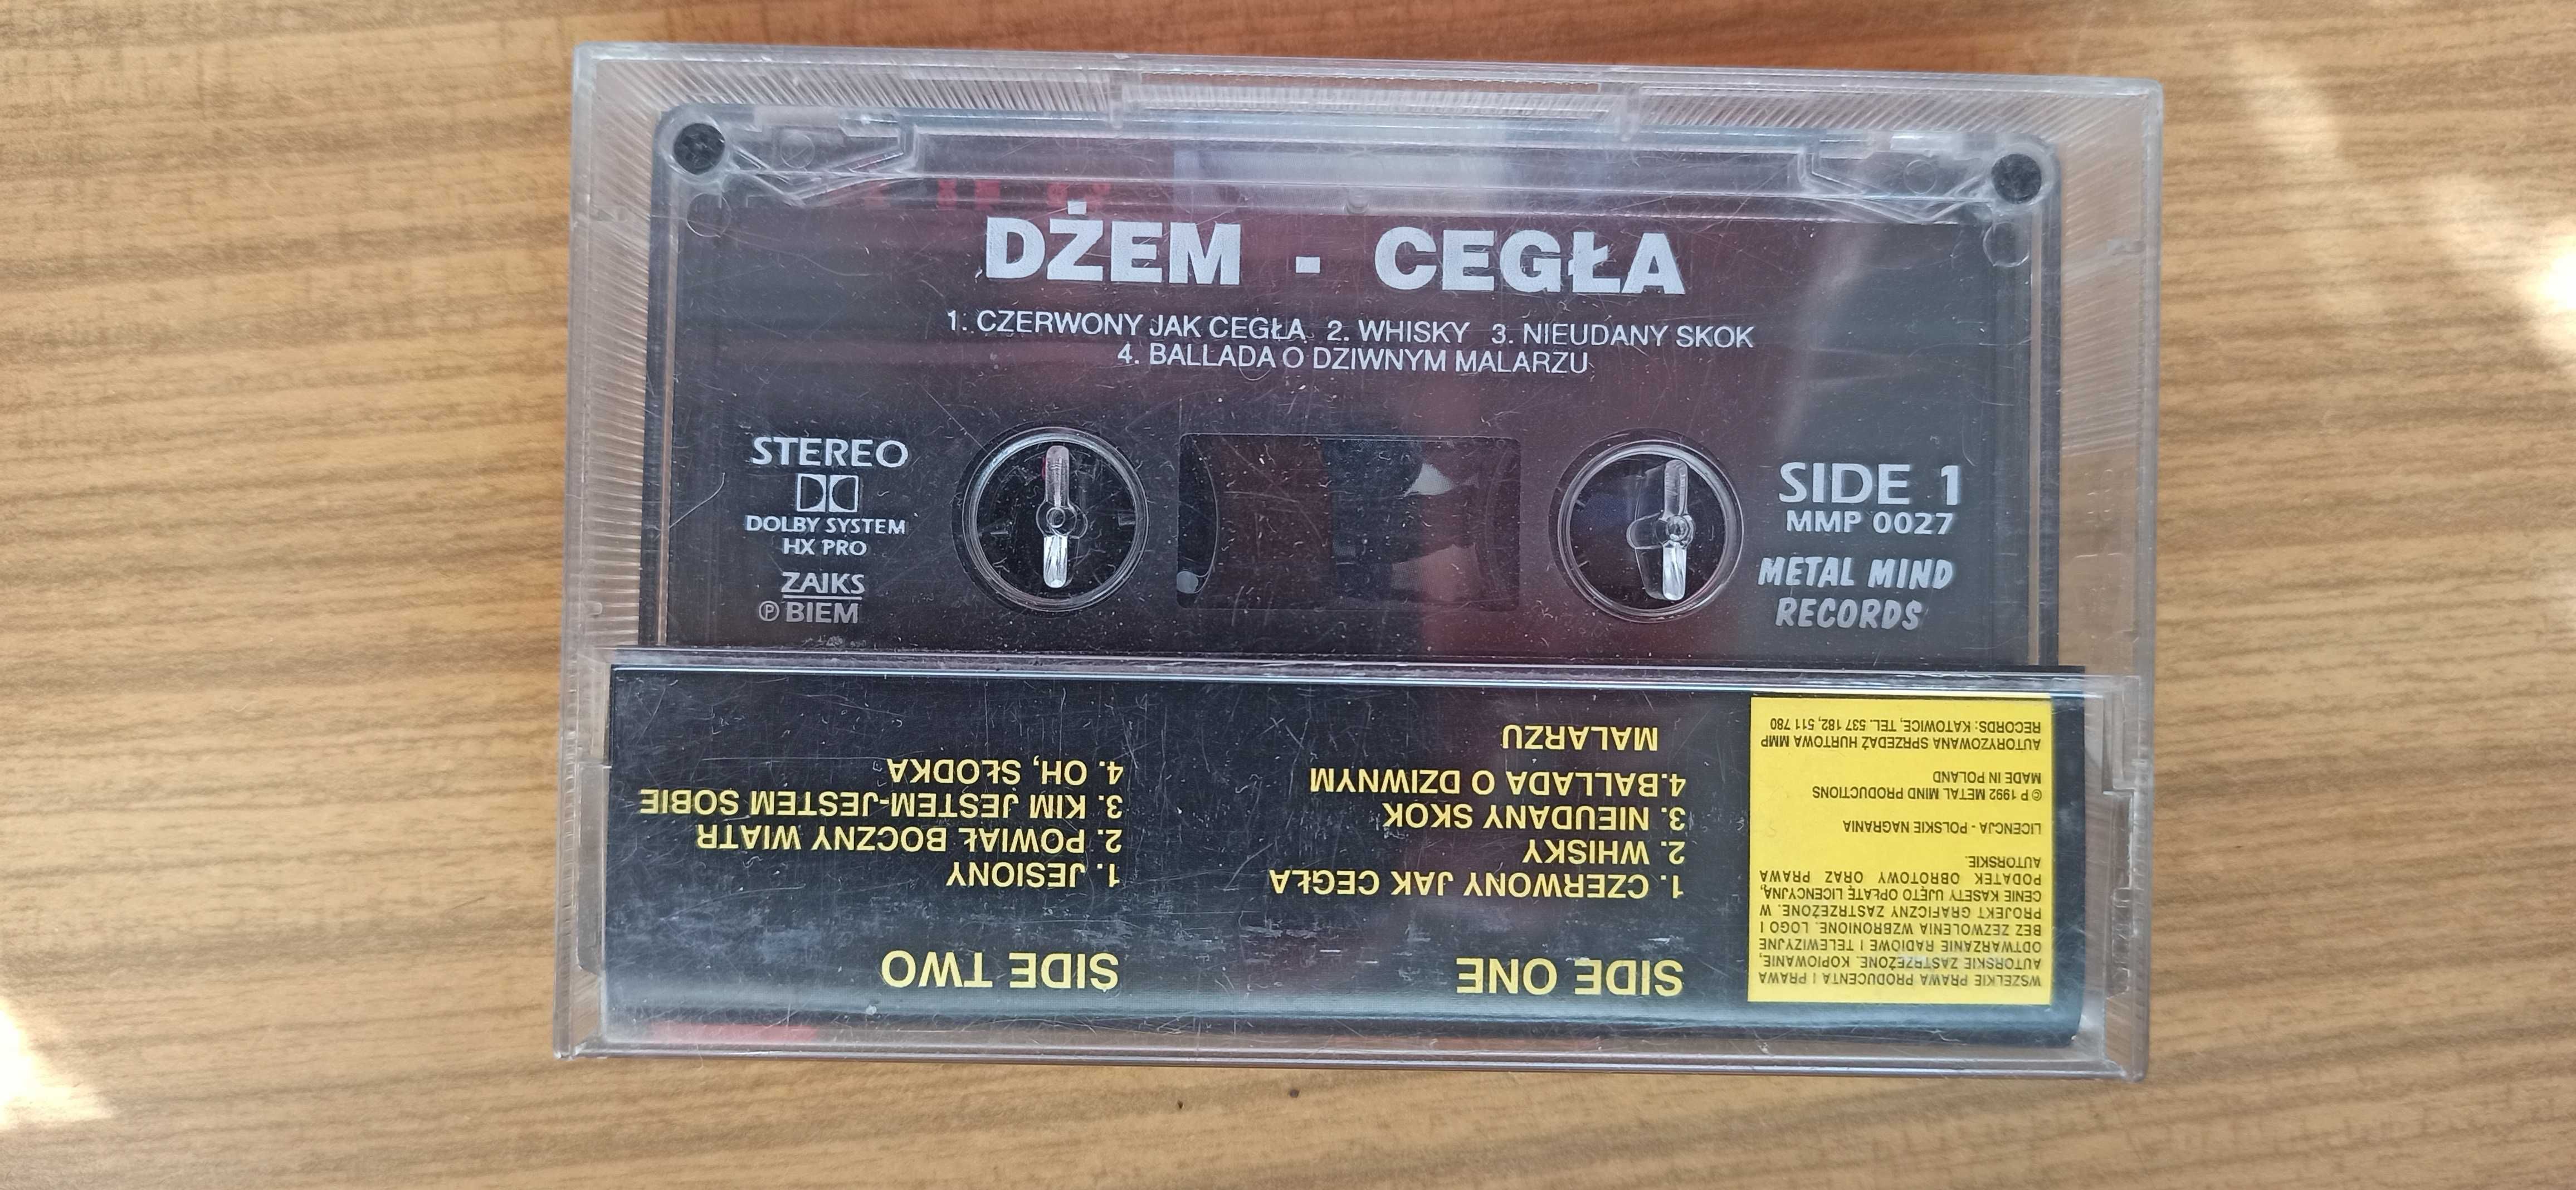 Dżem Cegła kaseta audio